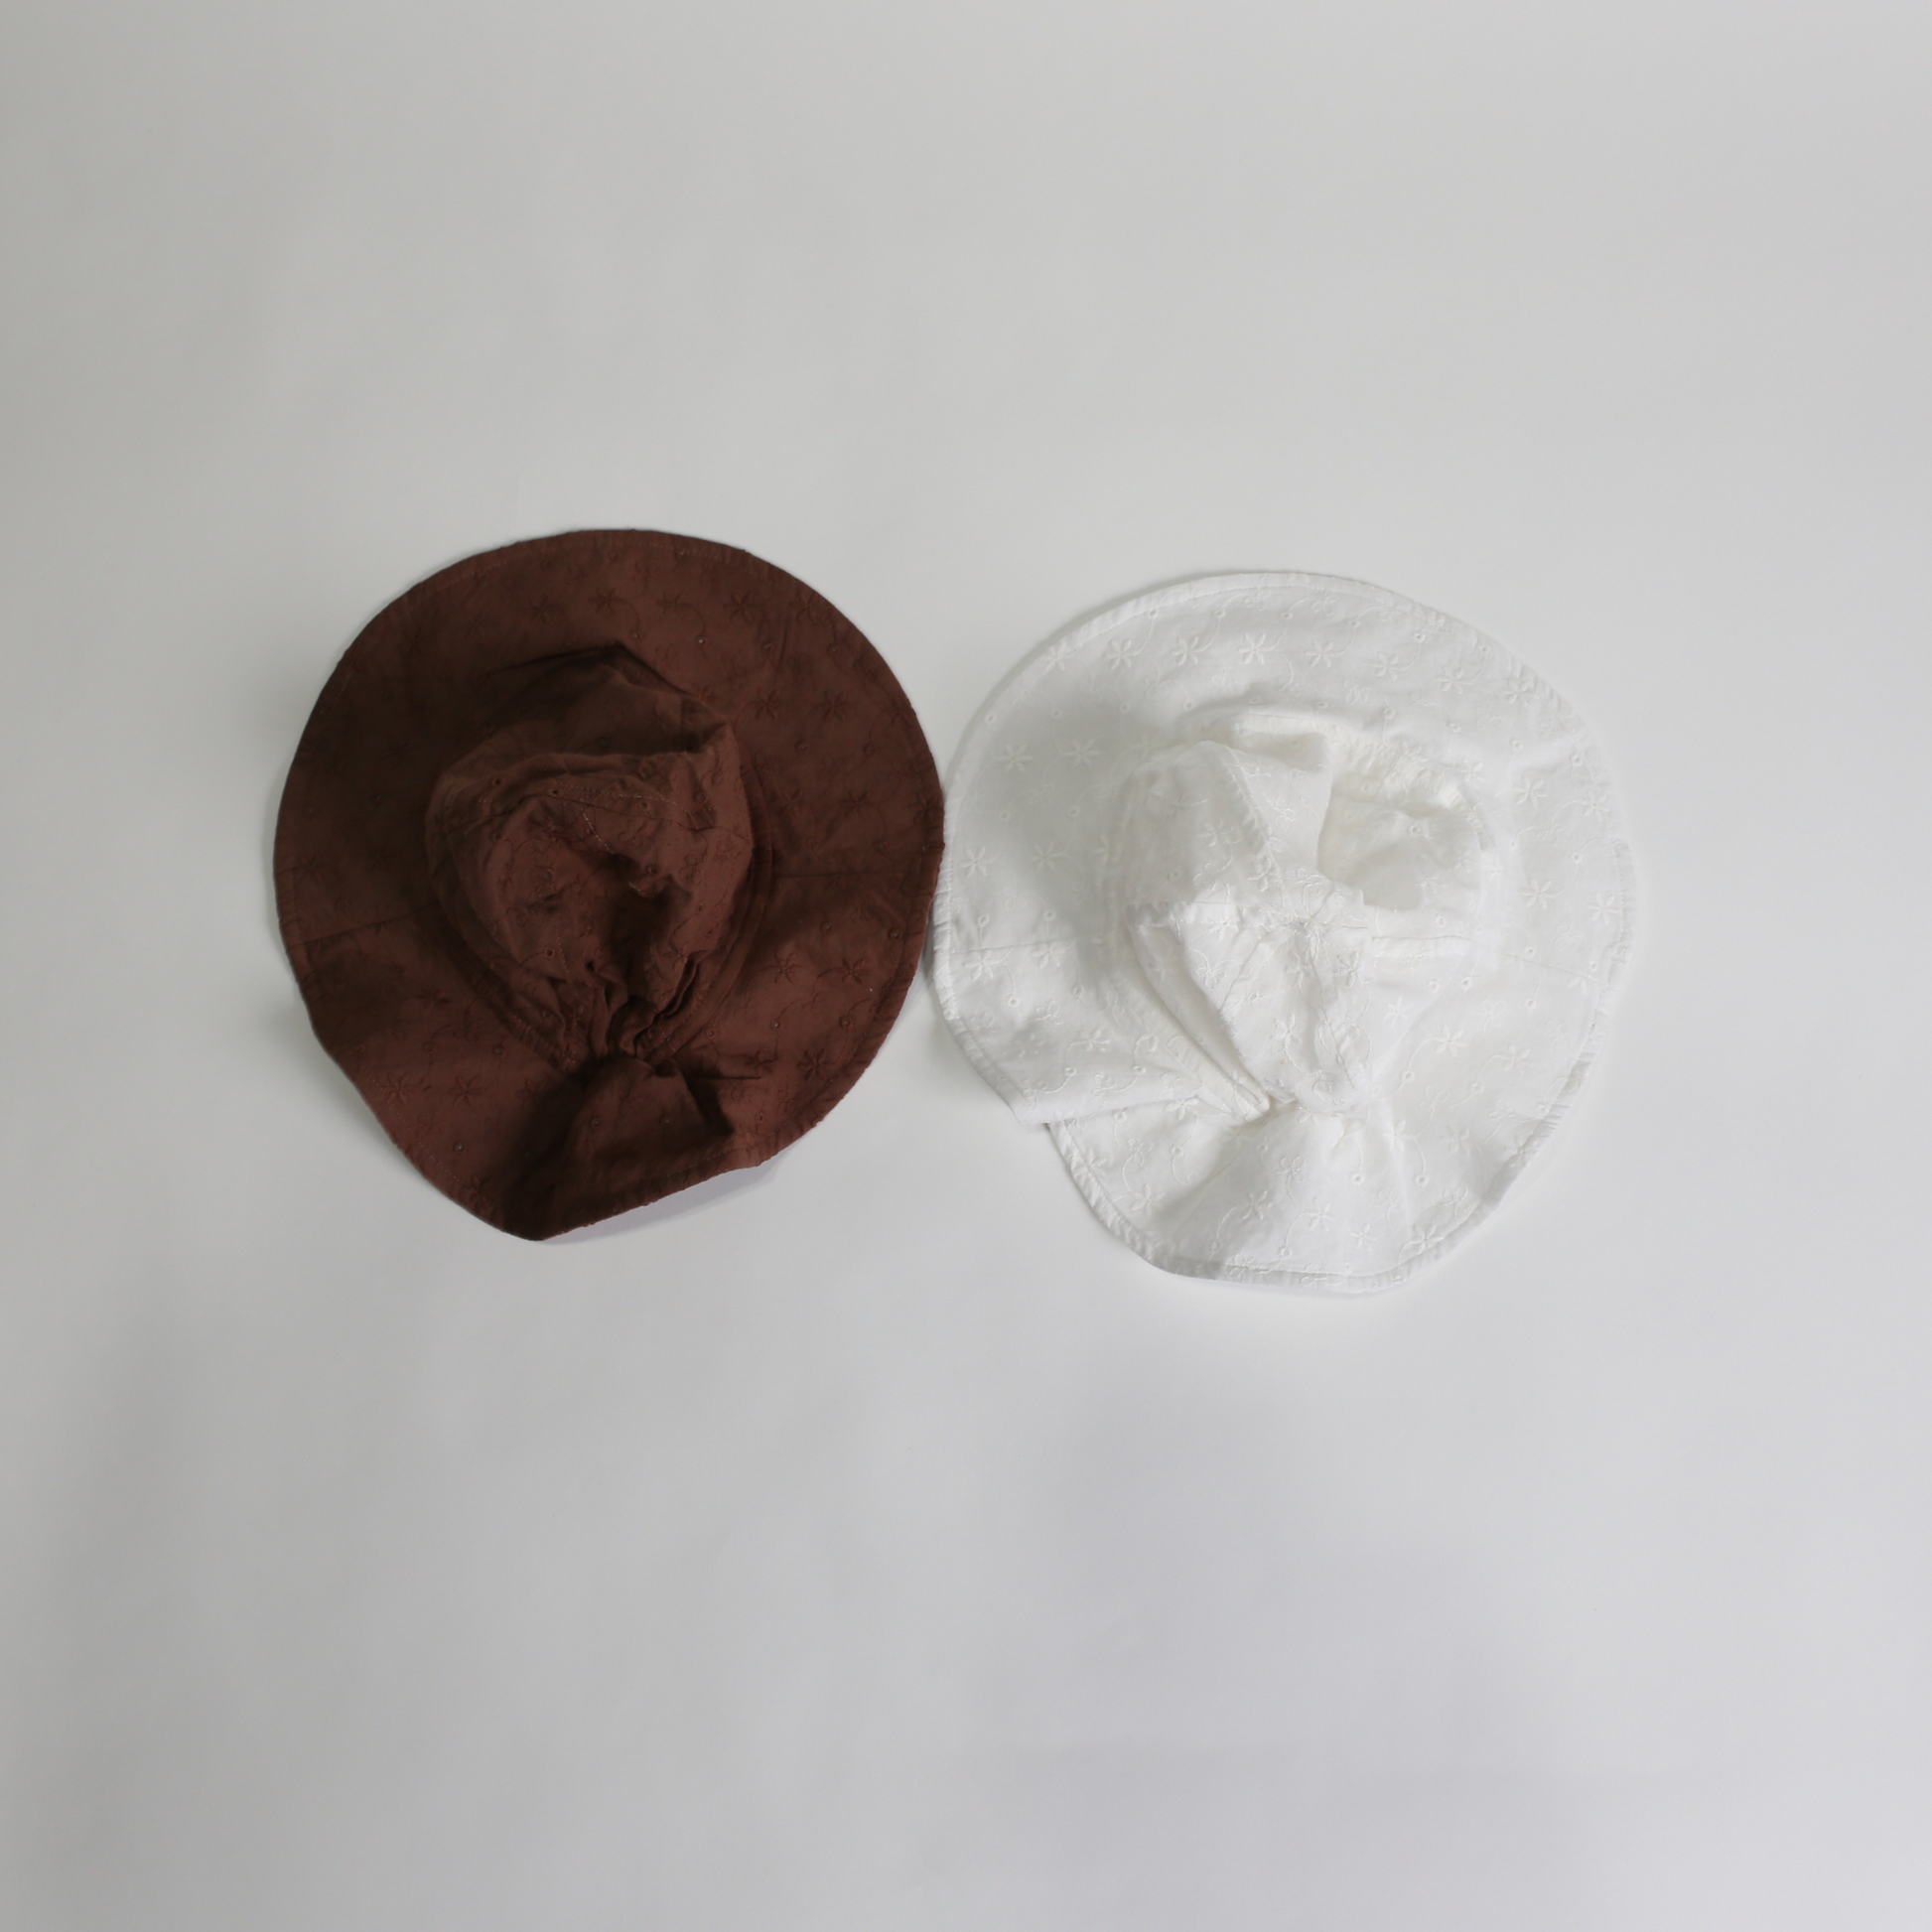 フラワーステッチ ベイビーハット / flower stitch baby hat (こども 帽子) - kids clothes shop GUZUGUZU